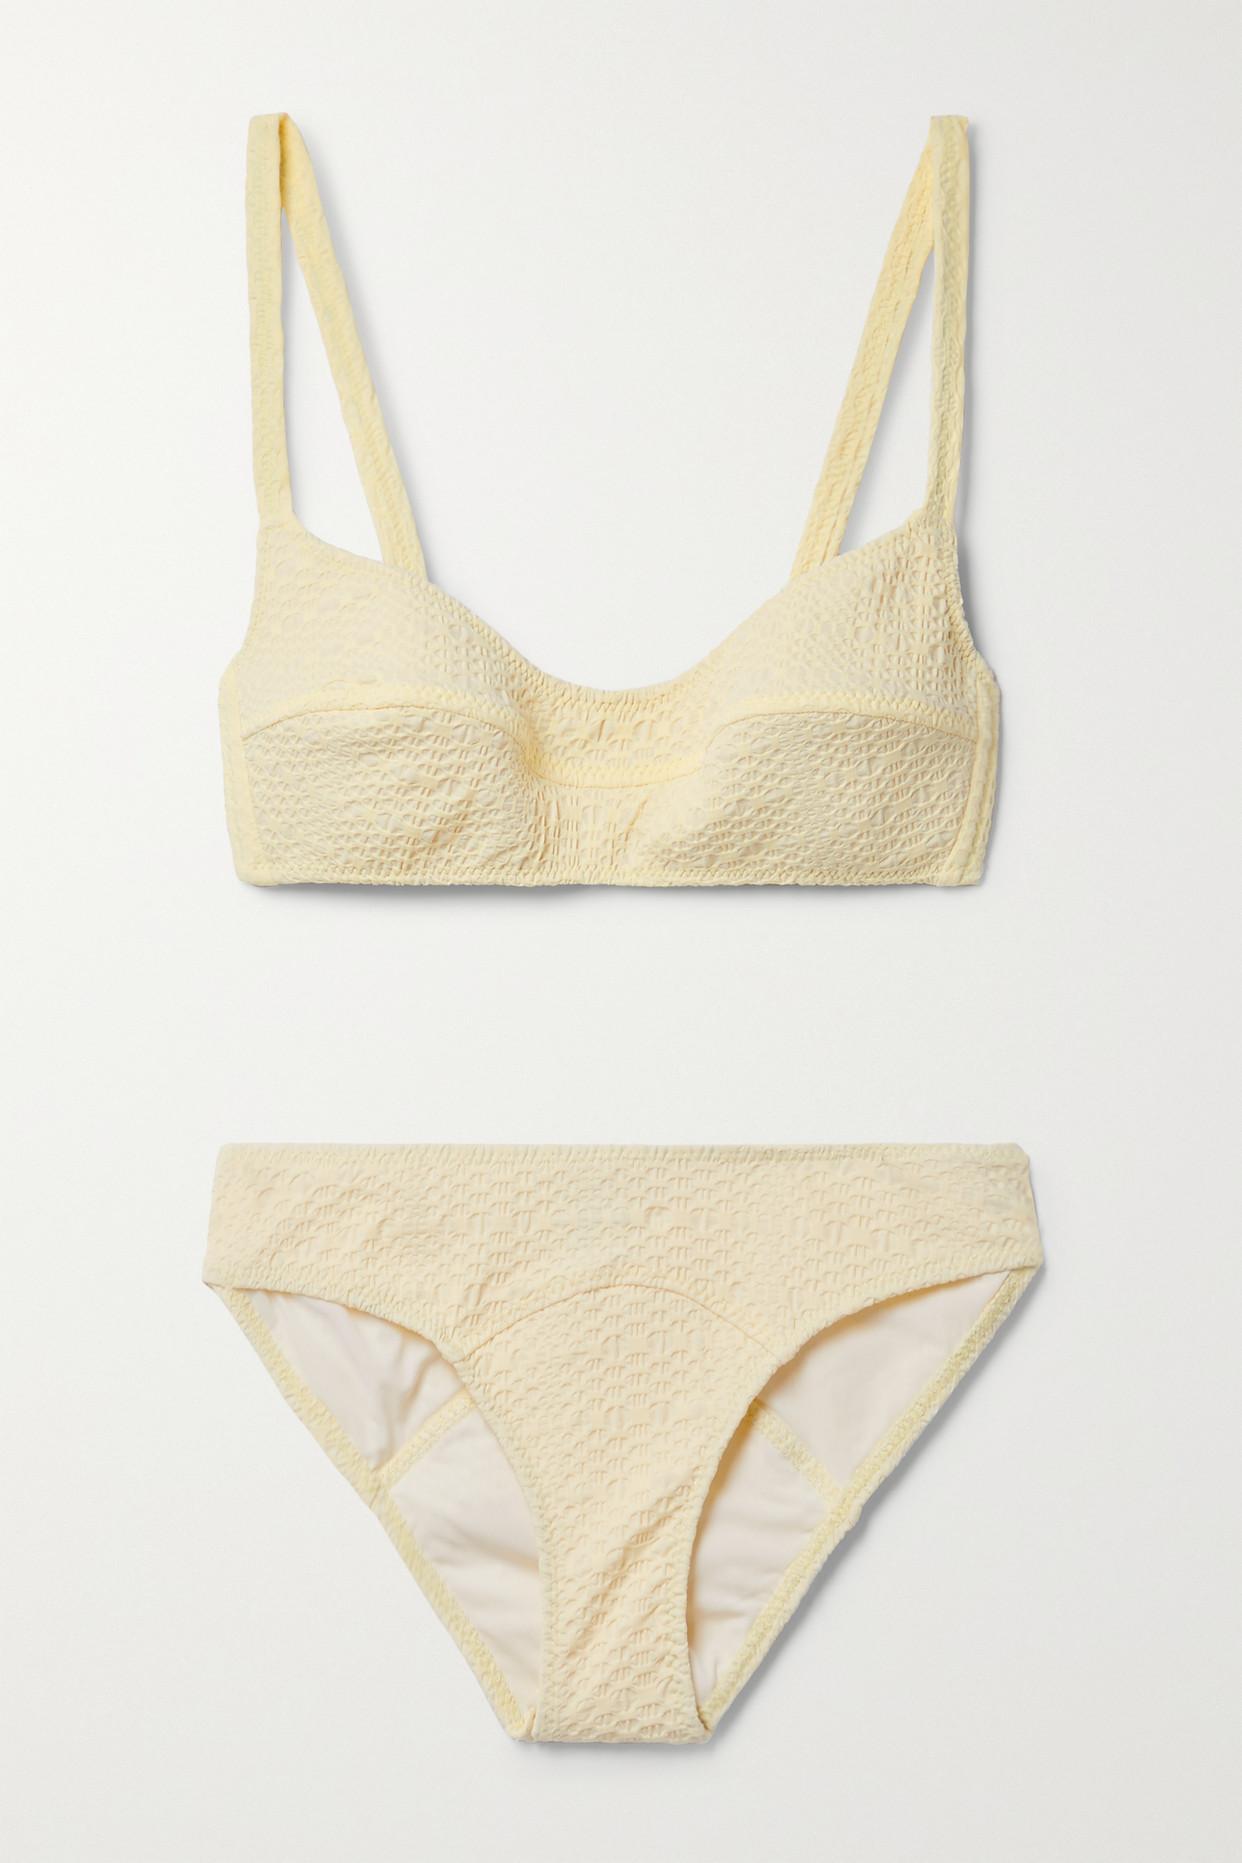 Lisa Marie Fernandez + Net Sustain Seersucker Bikini in White | Lyst